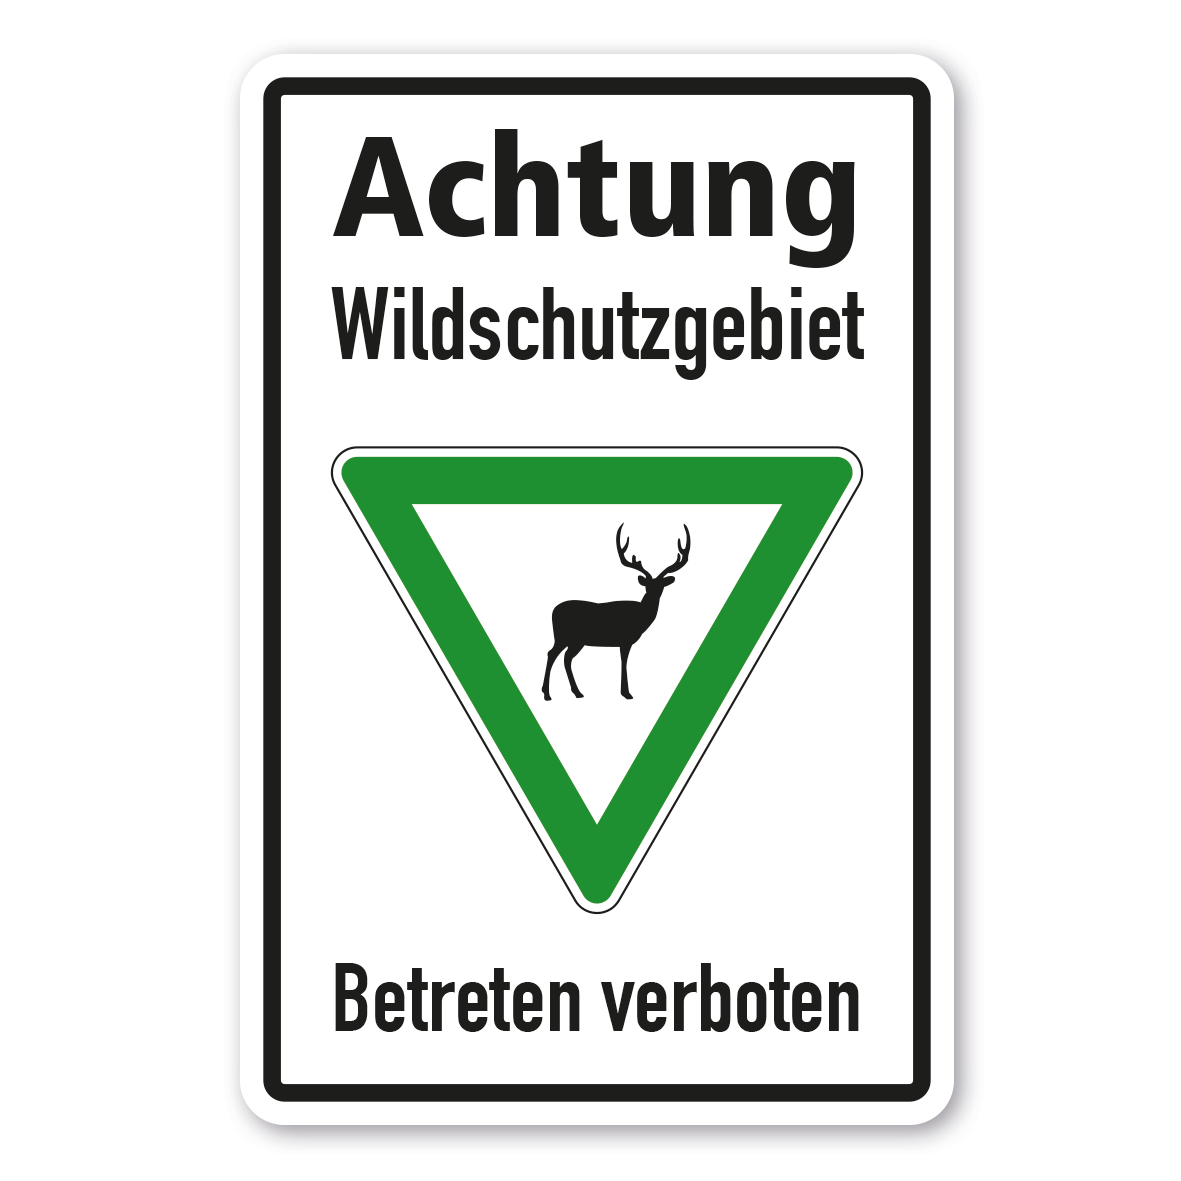 https://www.deinschilderdruck.de/media/image/d7/6a/23/VZ-K-71-Achtung-Wildschutzgebiet-Betreten-verboten-Hirsch.png